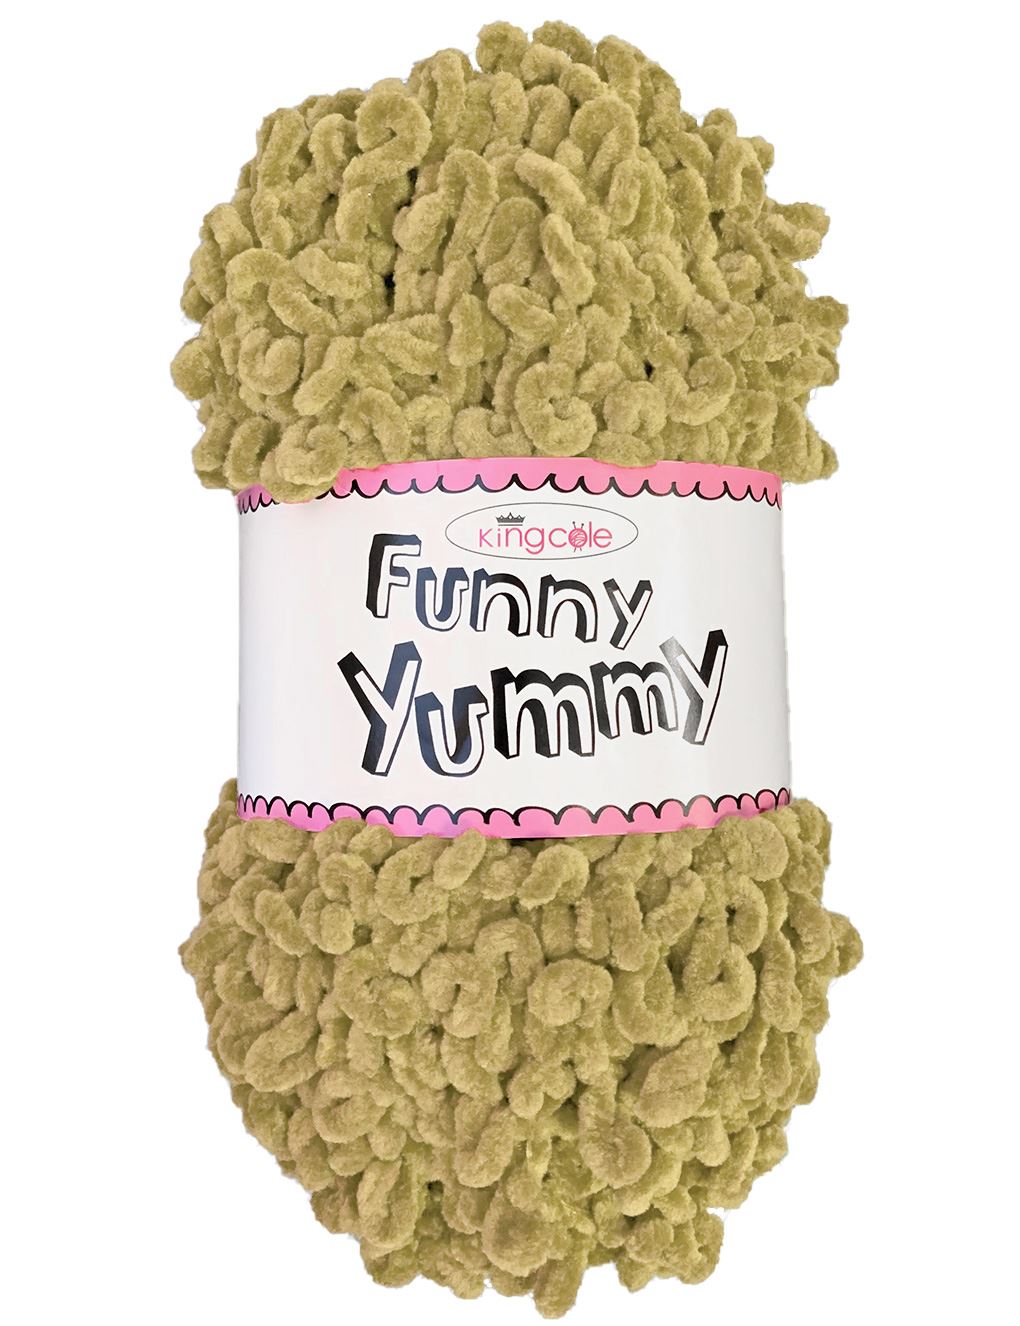 King Cole Funny Yummy Teddy (4145) chenille yarn - 100g